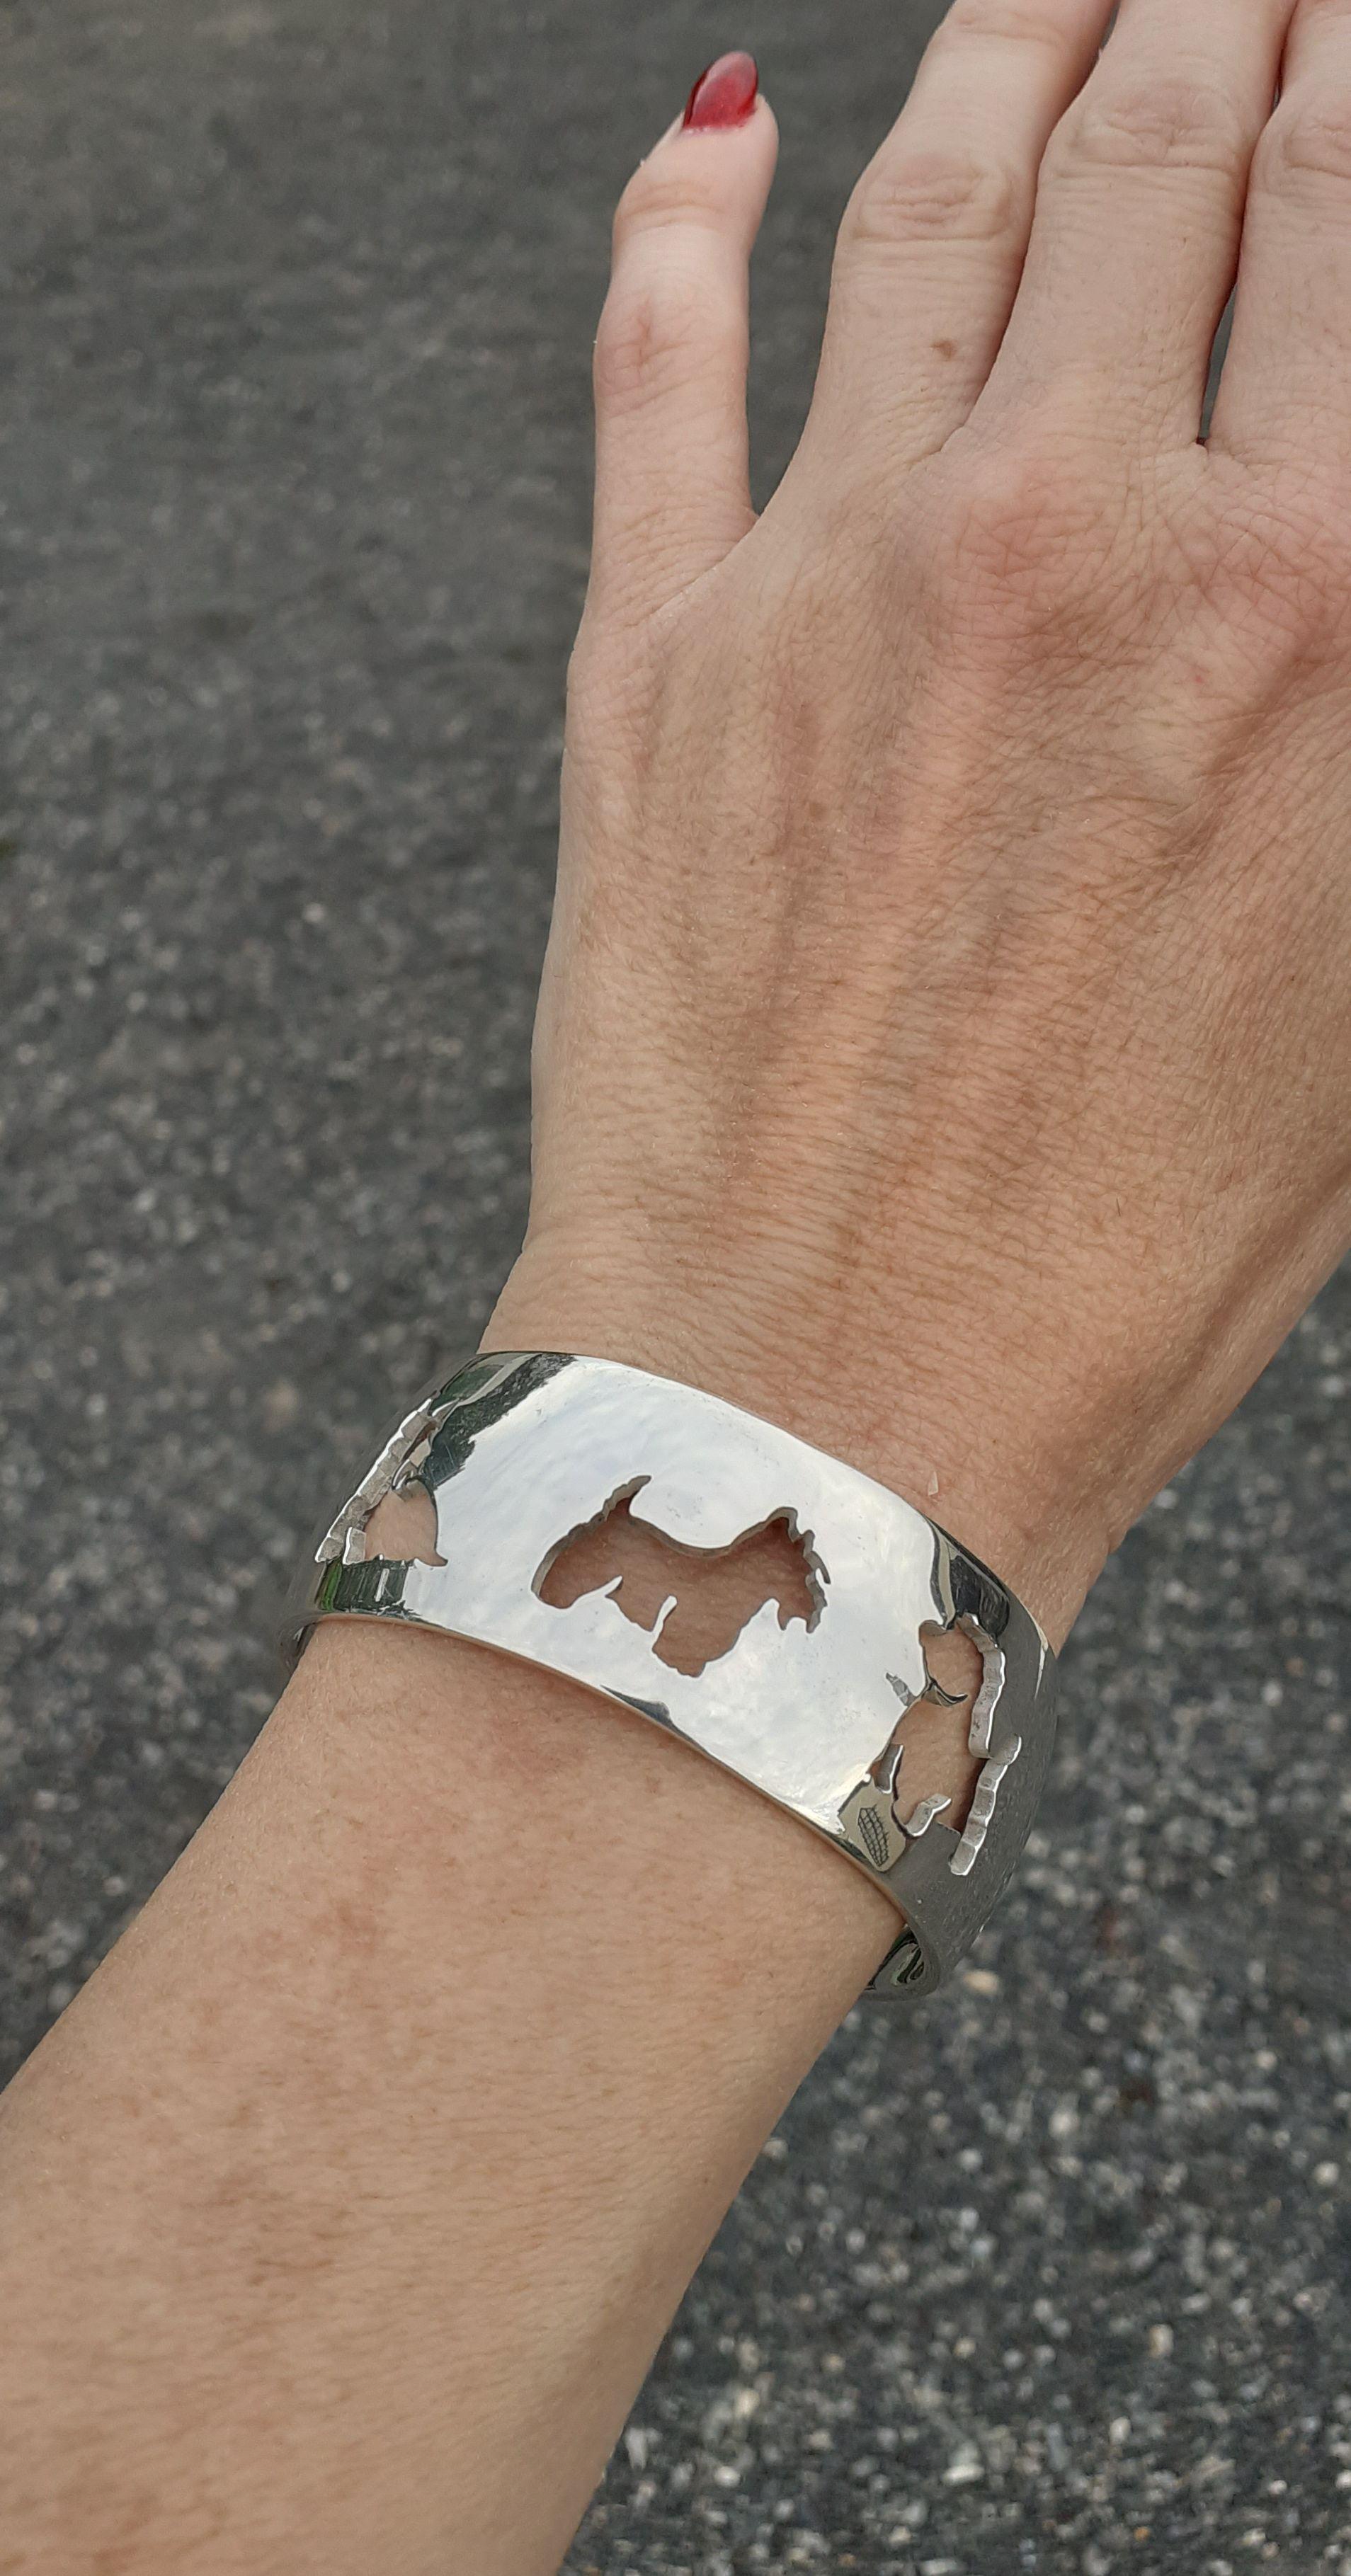 Seltenes und super süßes Authentic Hermès-Armband

Durchbrochenes Armband mit 5 verschiedenen Formen des West Highland White Terriers

Hergestellt aus Silber 

Farbgebung: silbern

